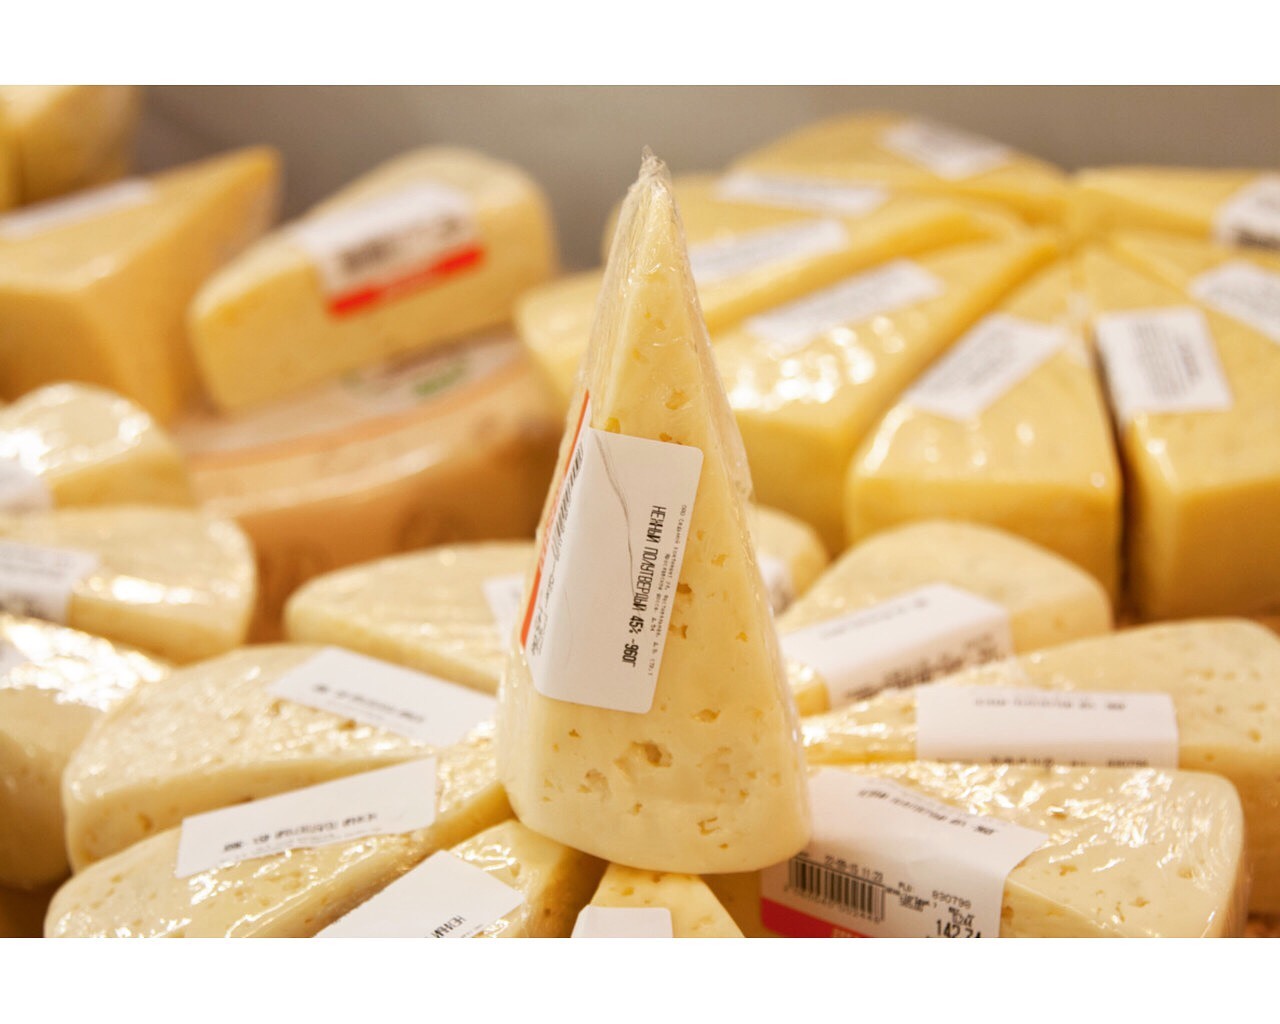 Купить сыры от производителя. Сыр фасованный. Сыры фасованные. Упаковка сыра. Сыр в упаковке.